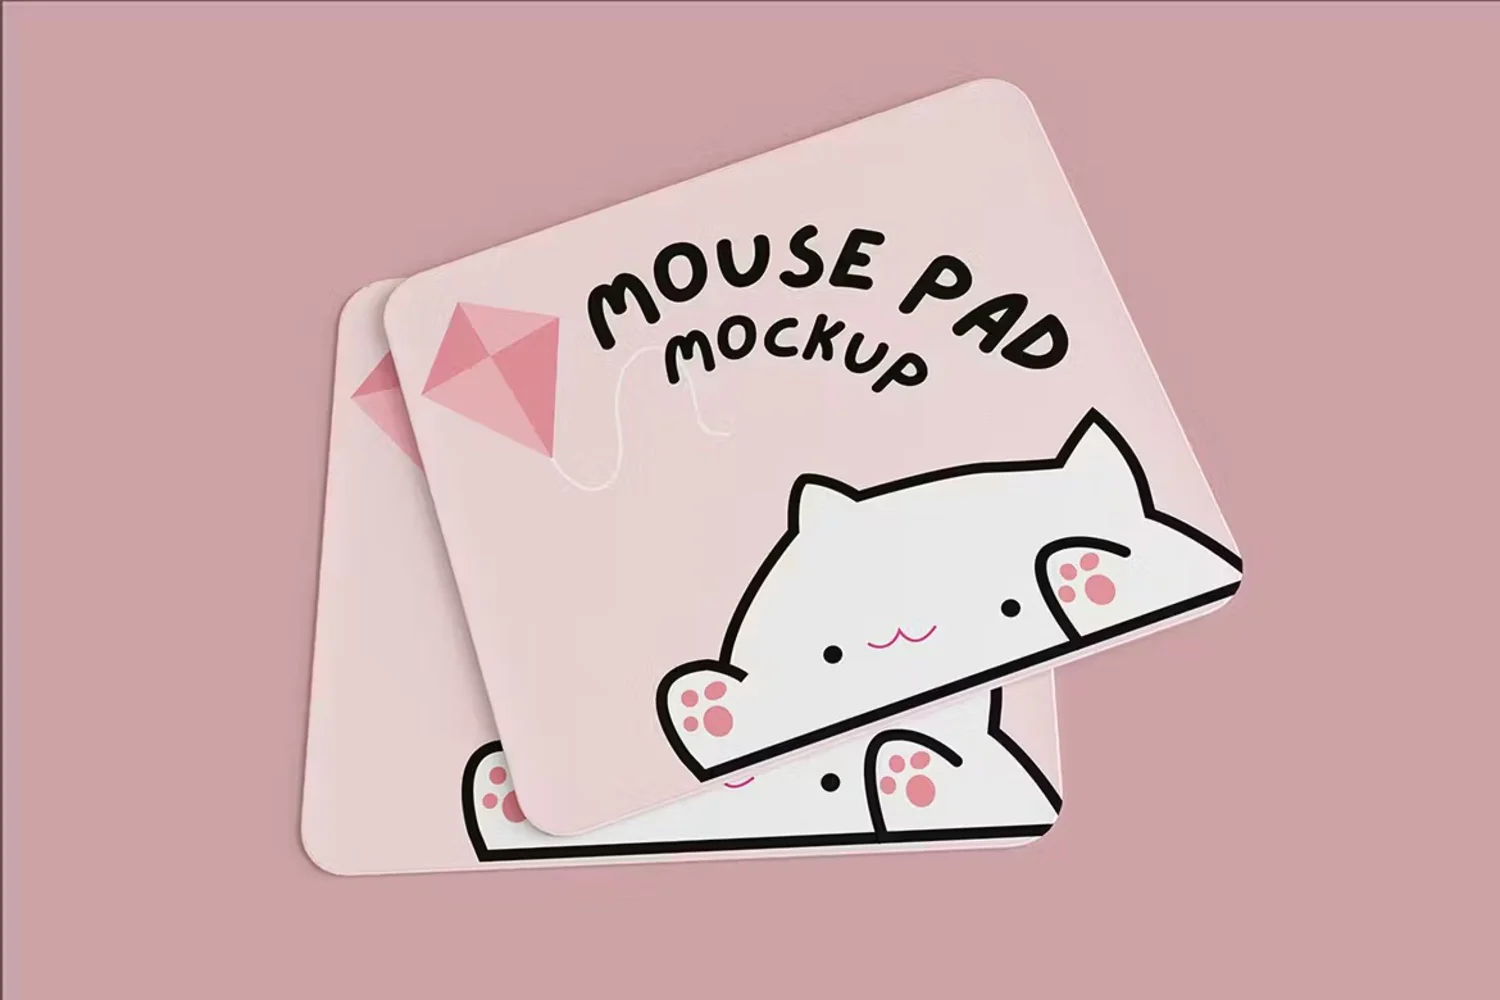 5253 5款鼠标垫设计PSD样机素材 Mousepad Mockup@GOOODME.COM